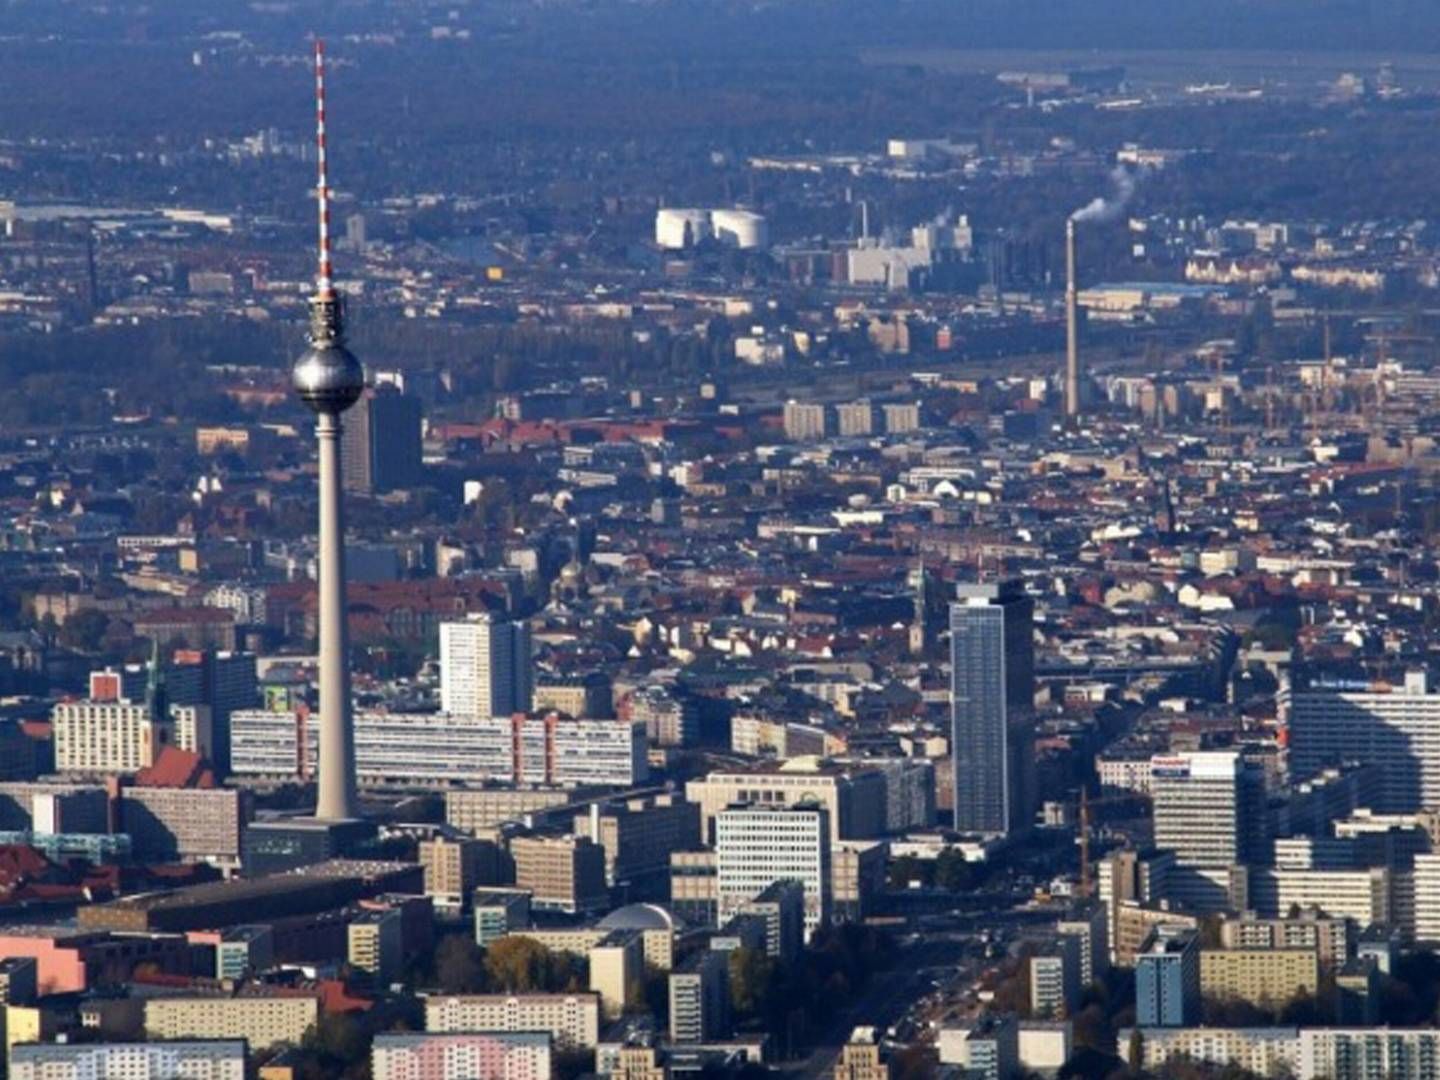 Luftfoto af Berlin, Tyskland. | Foto: PR